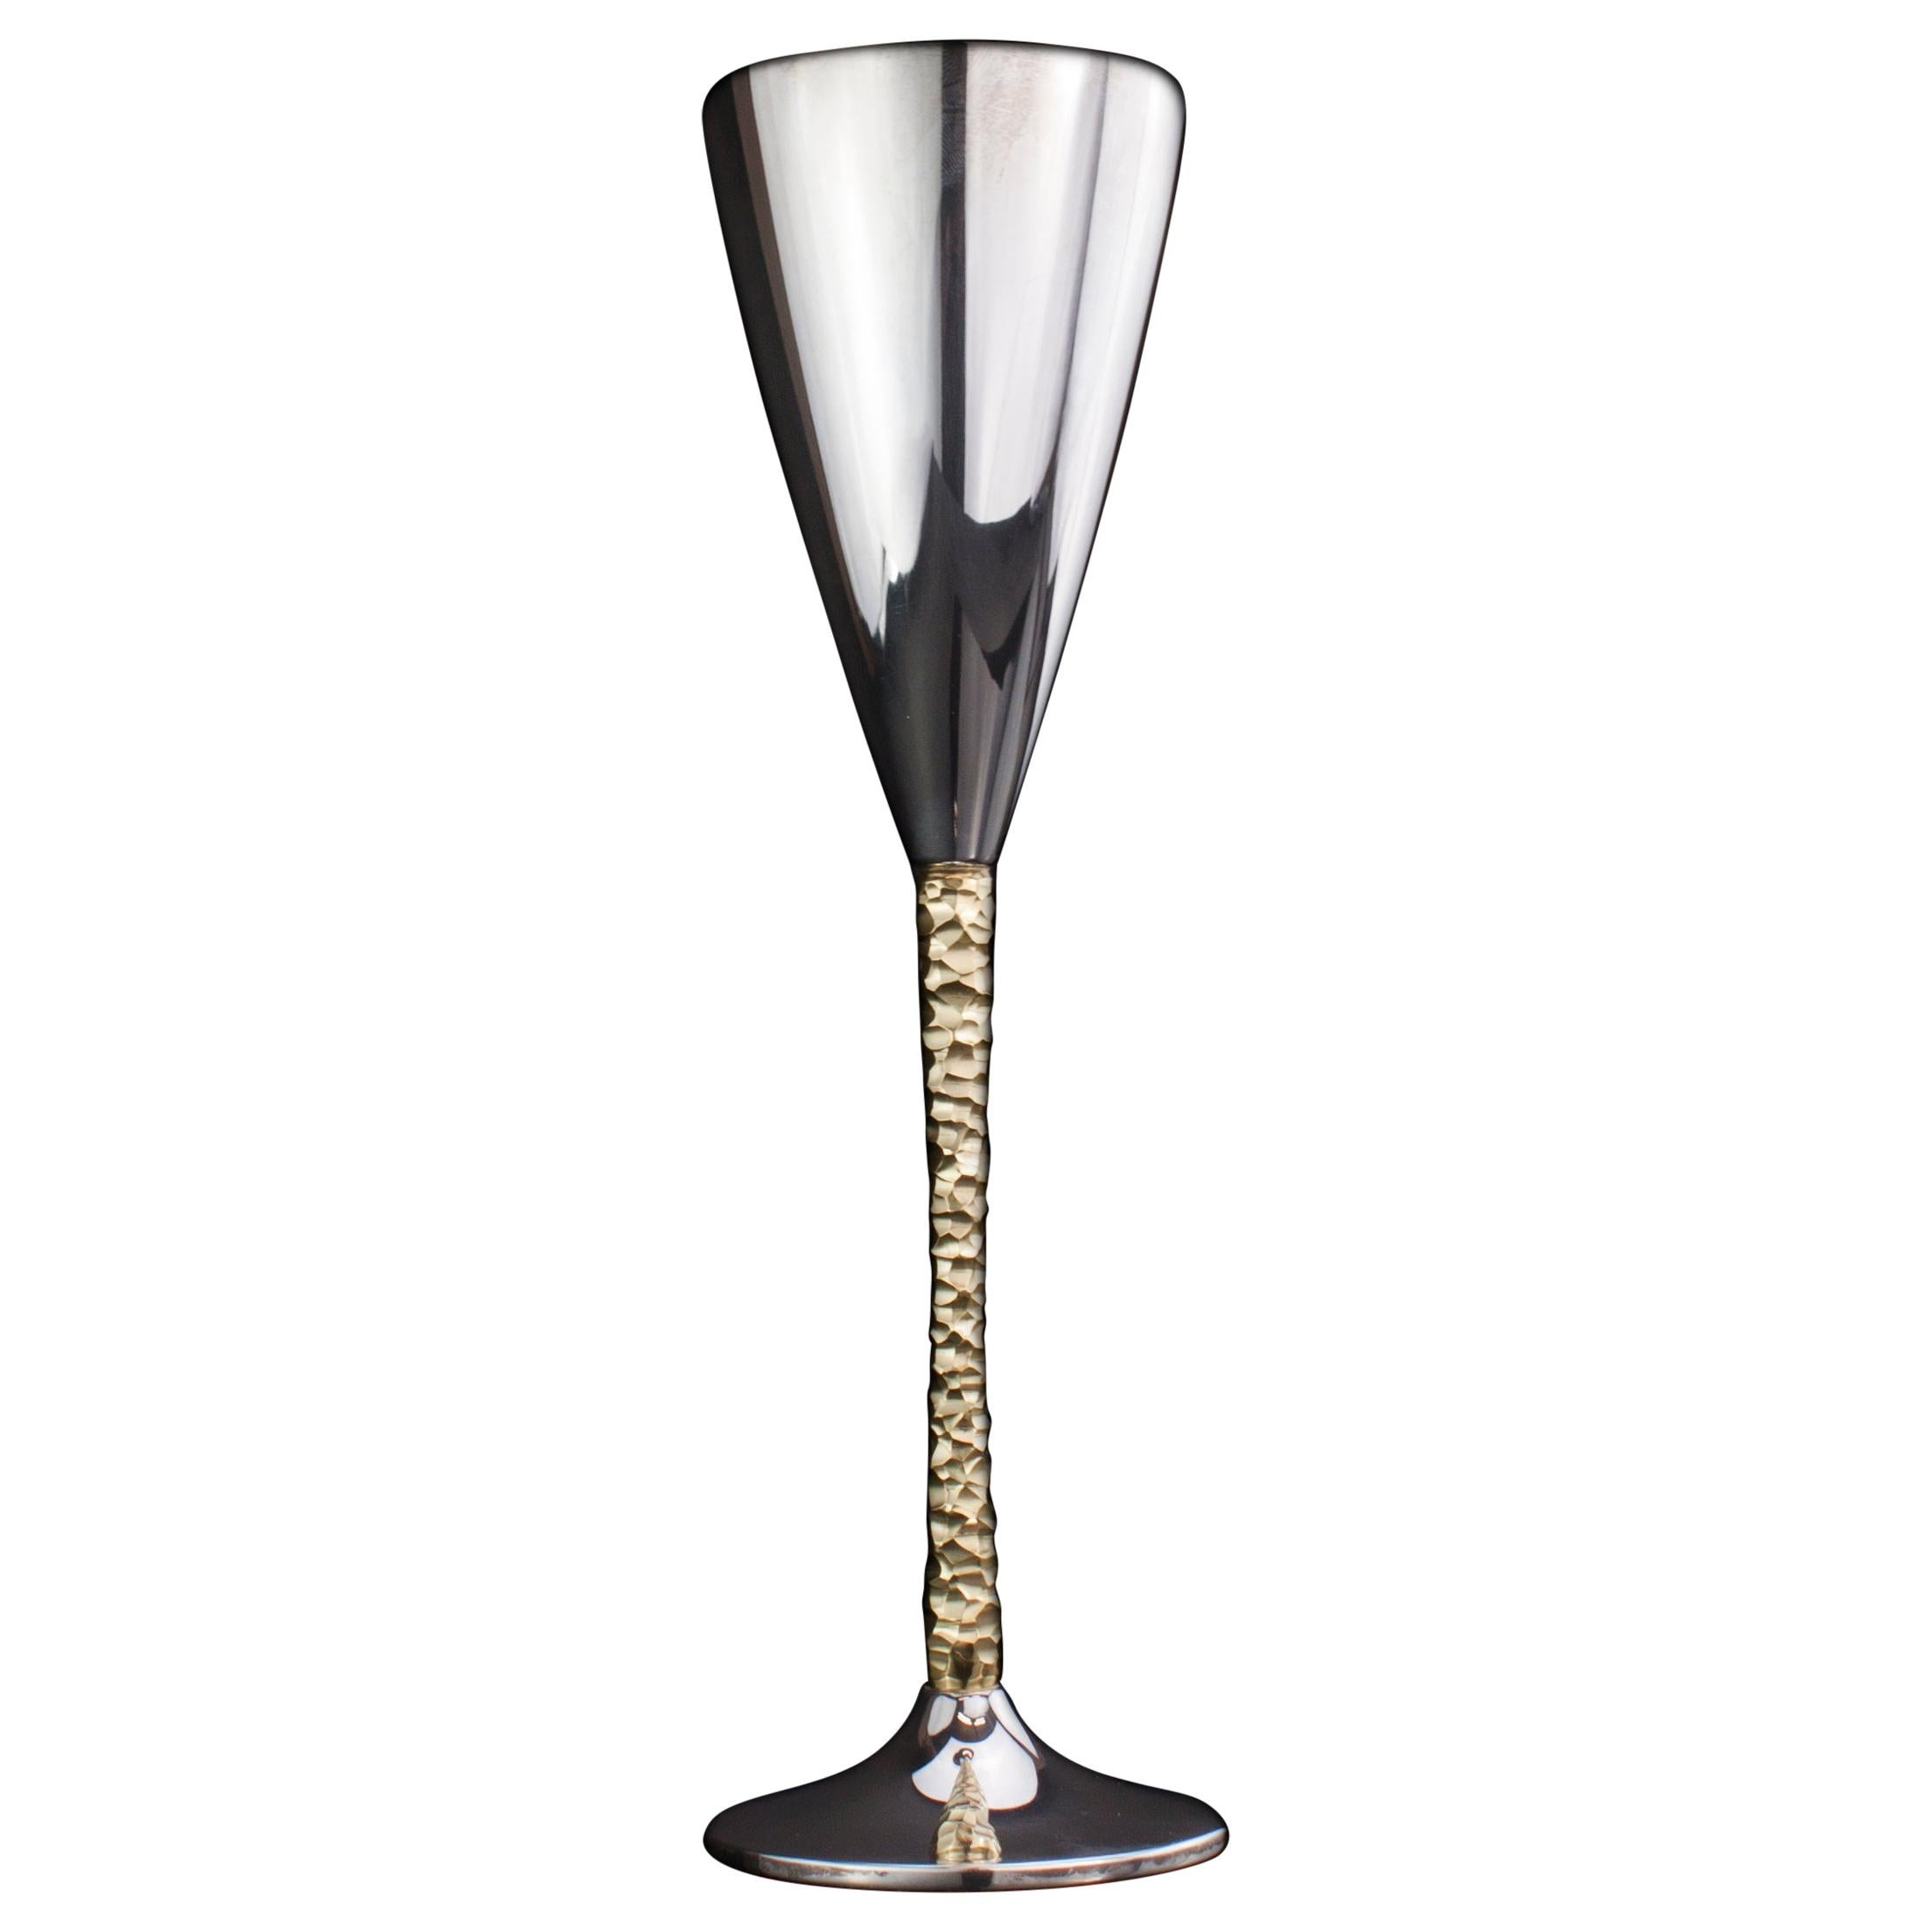 Stuart Devlin Falcon Award 1979 Silver Champagne Flute